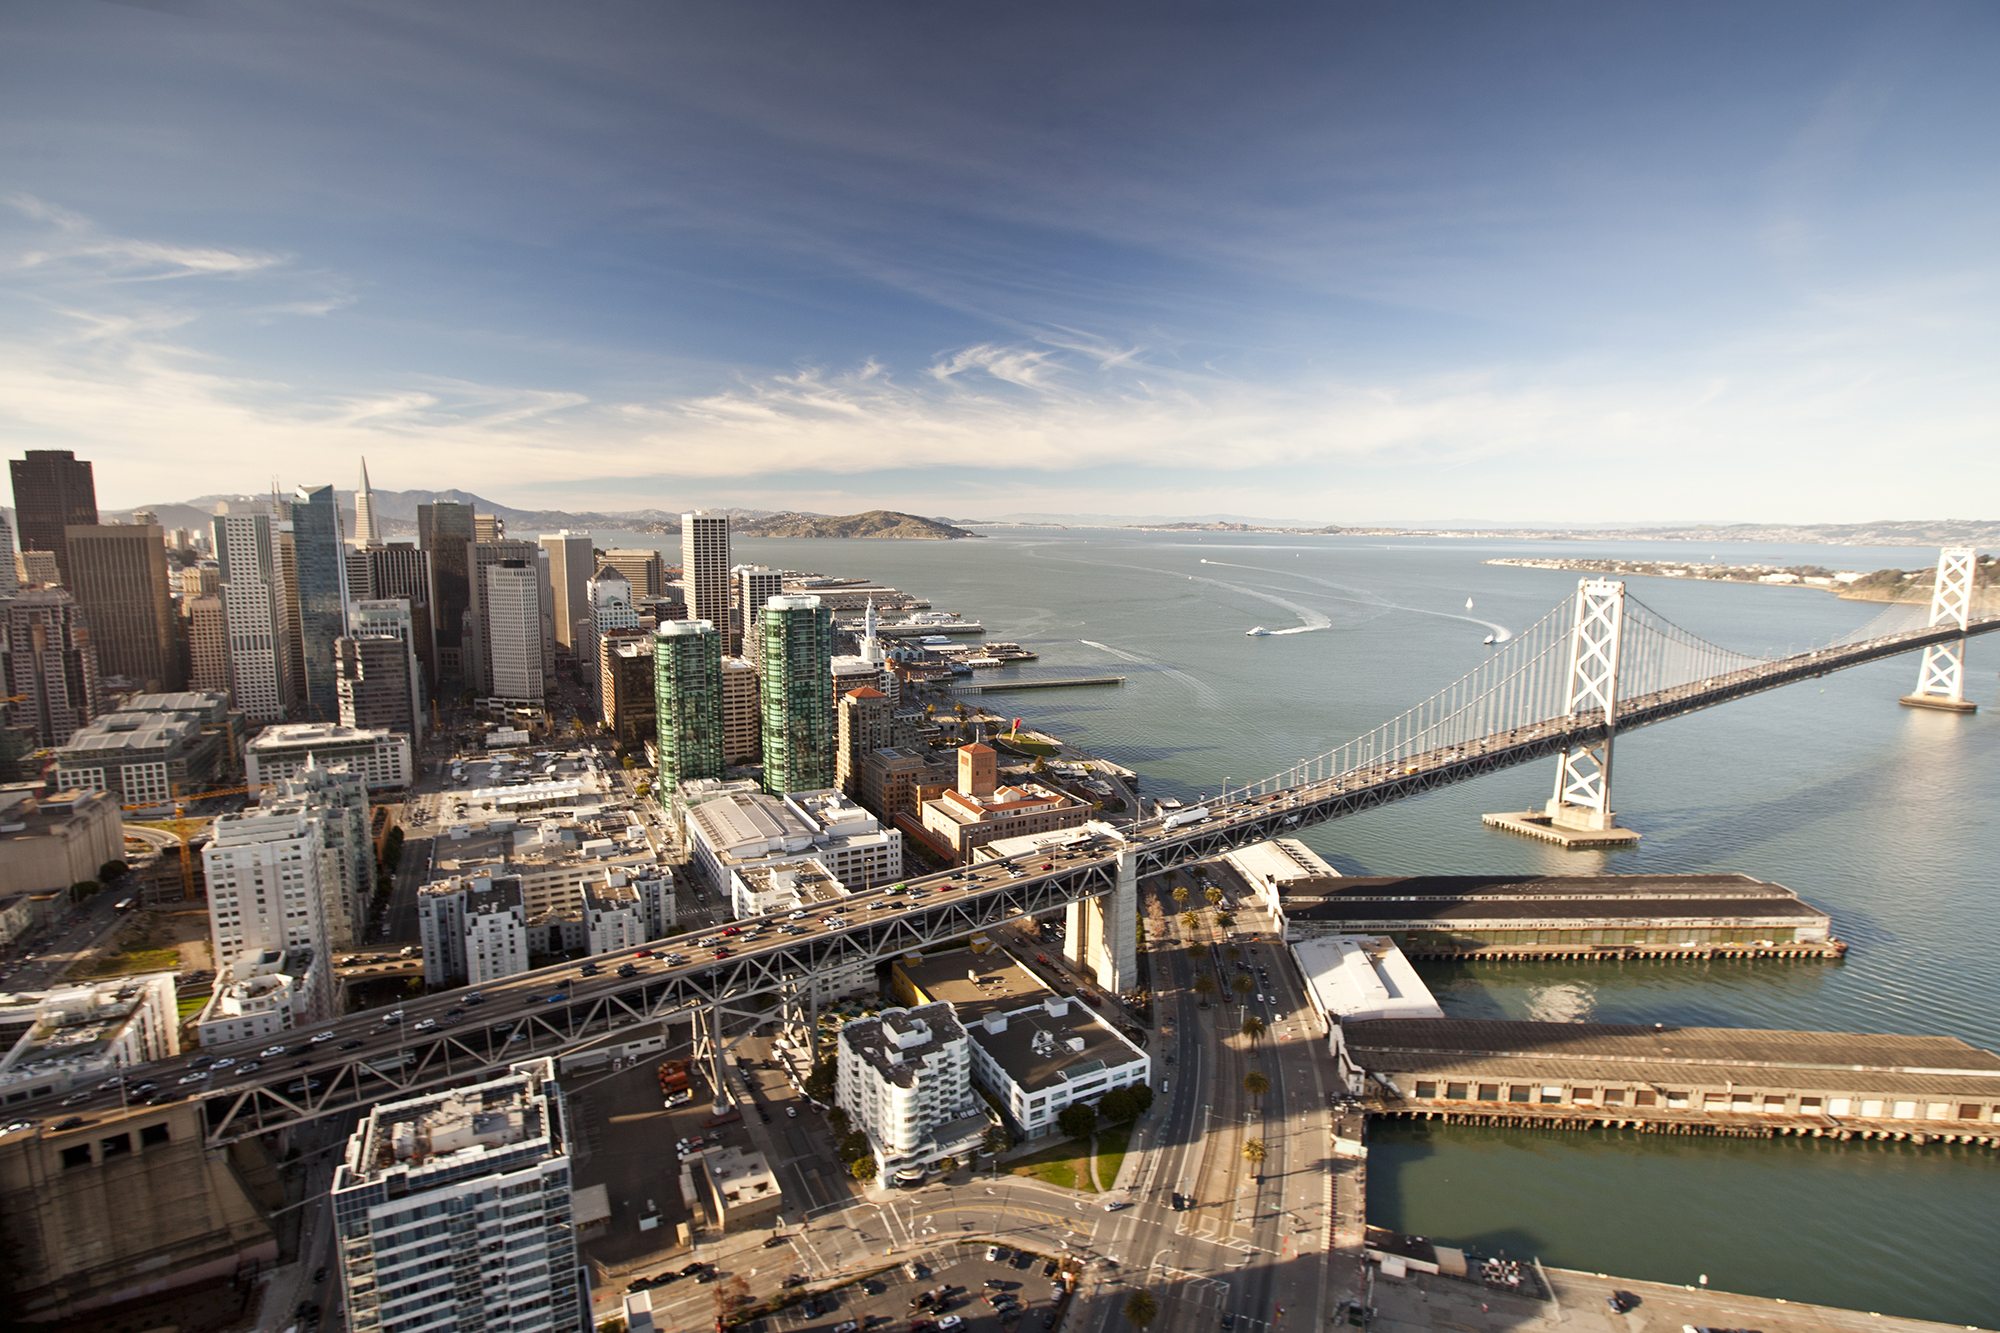 Det klassiske iværksætter-road trip fra San Francisco til Silicon Valley